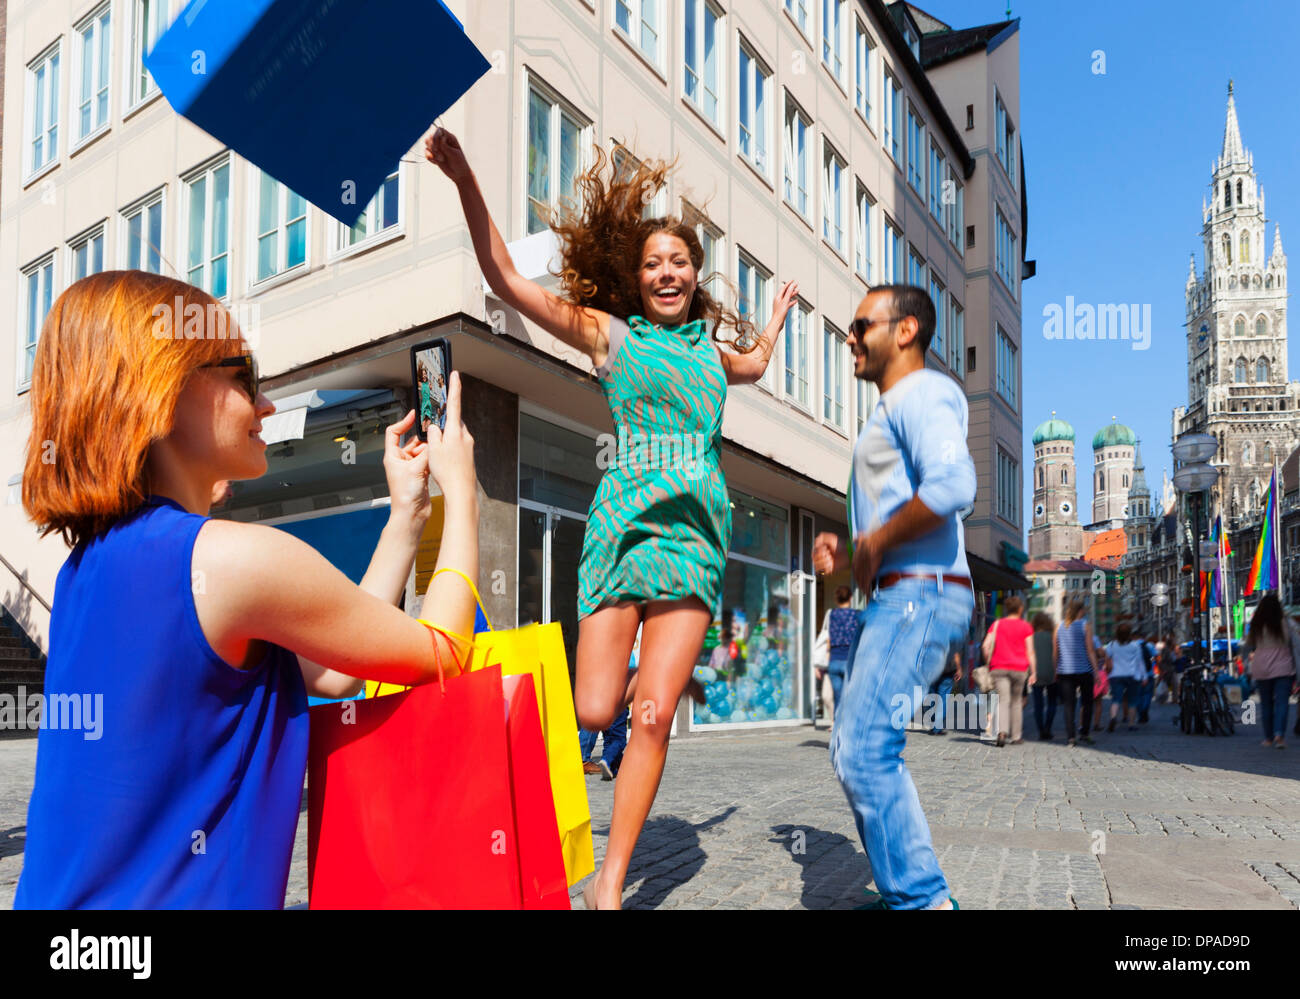 Frau mit Einkaufstasche in München Marienplatz, München, springen Stockfoto